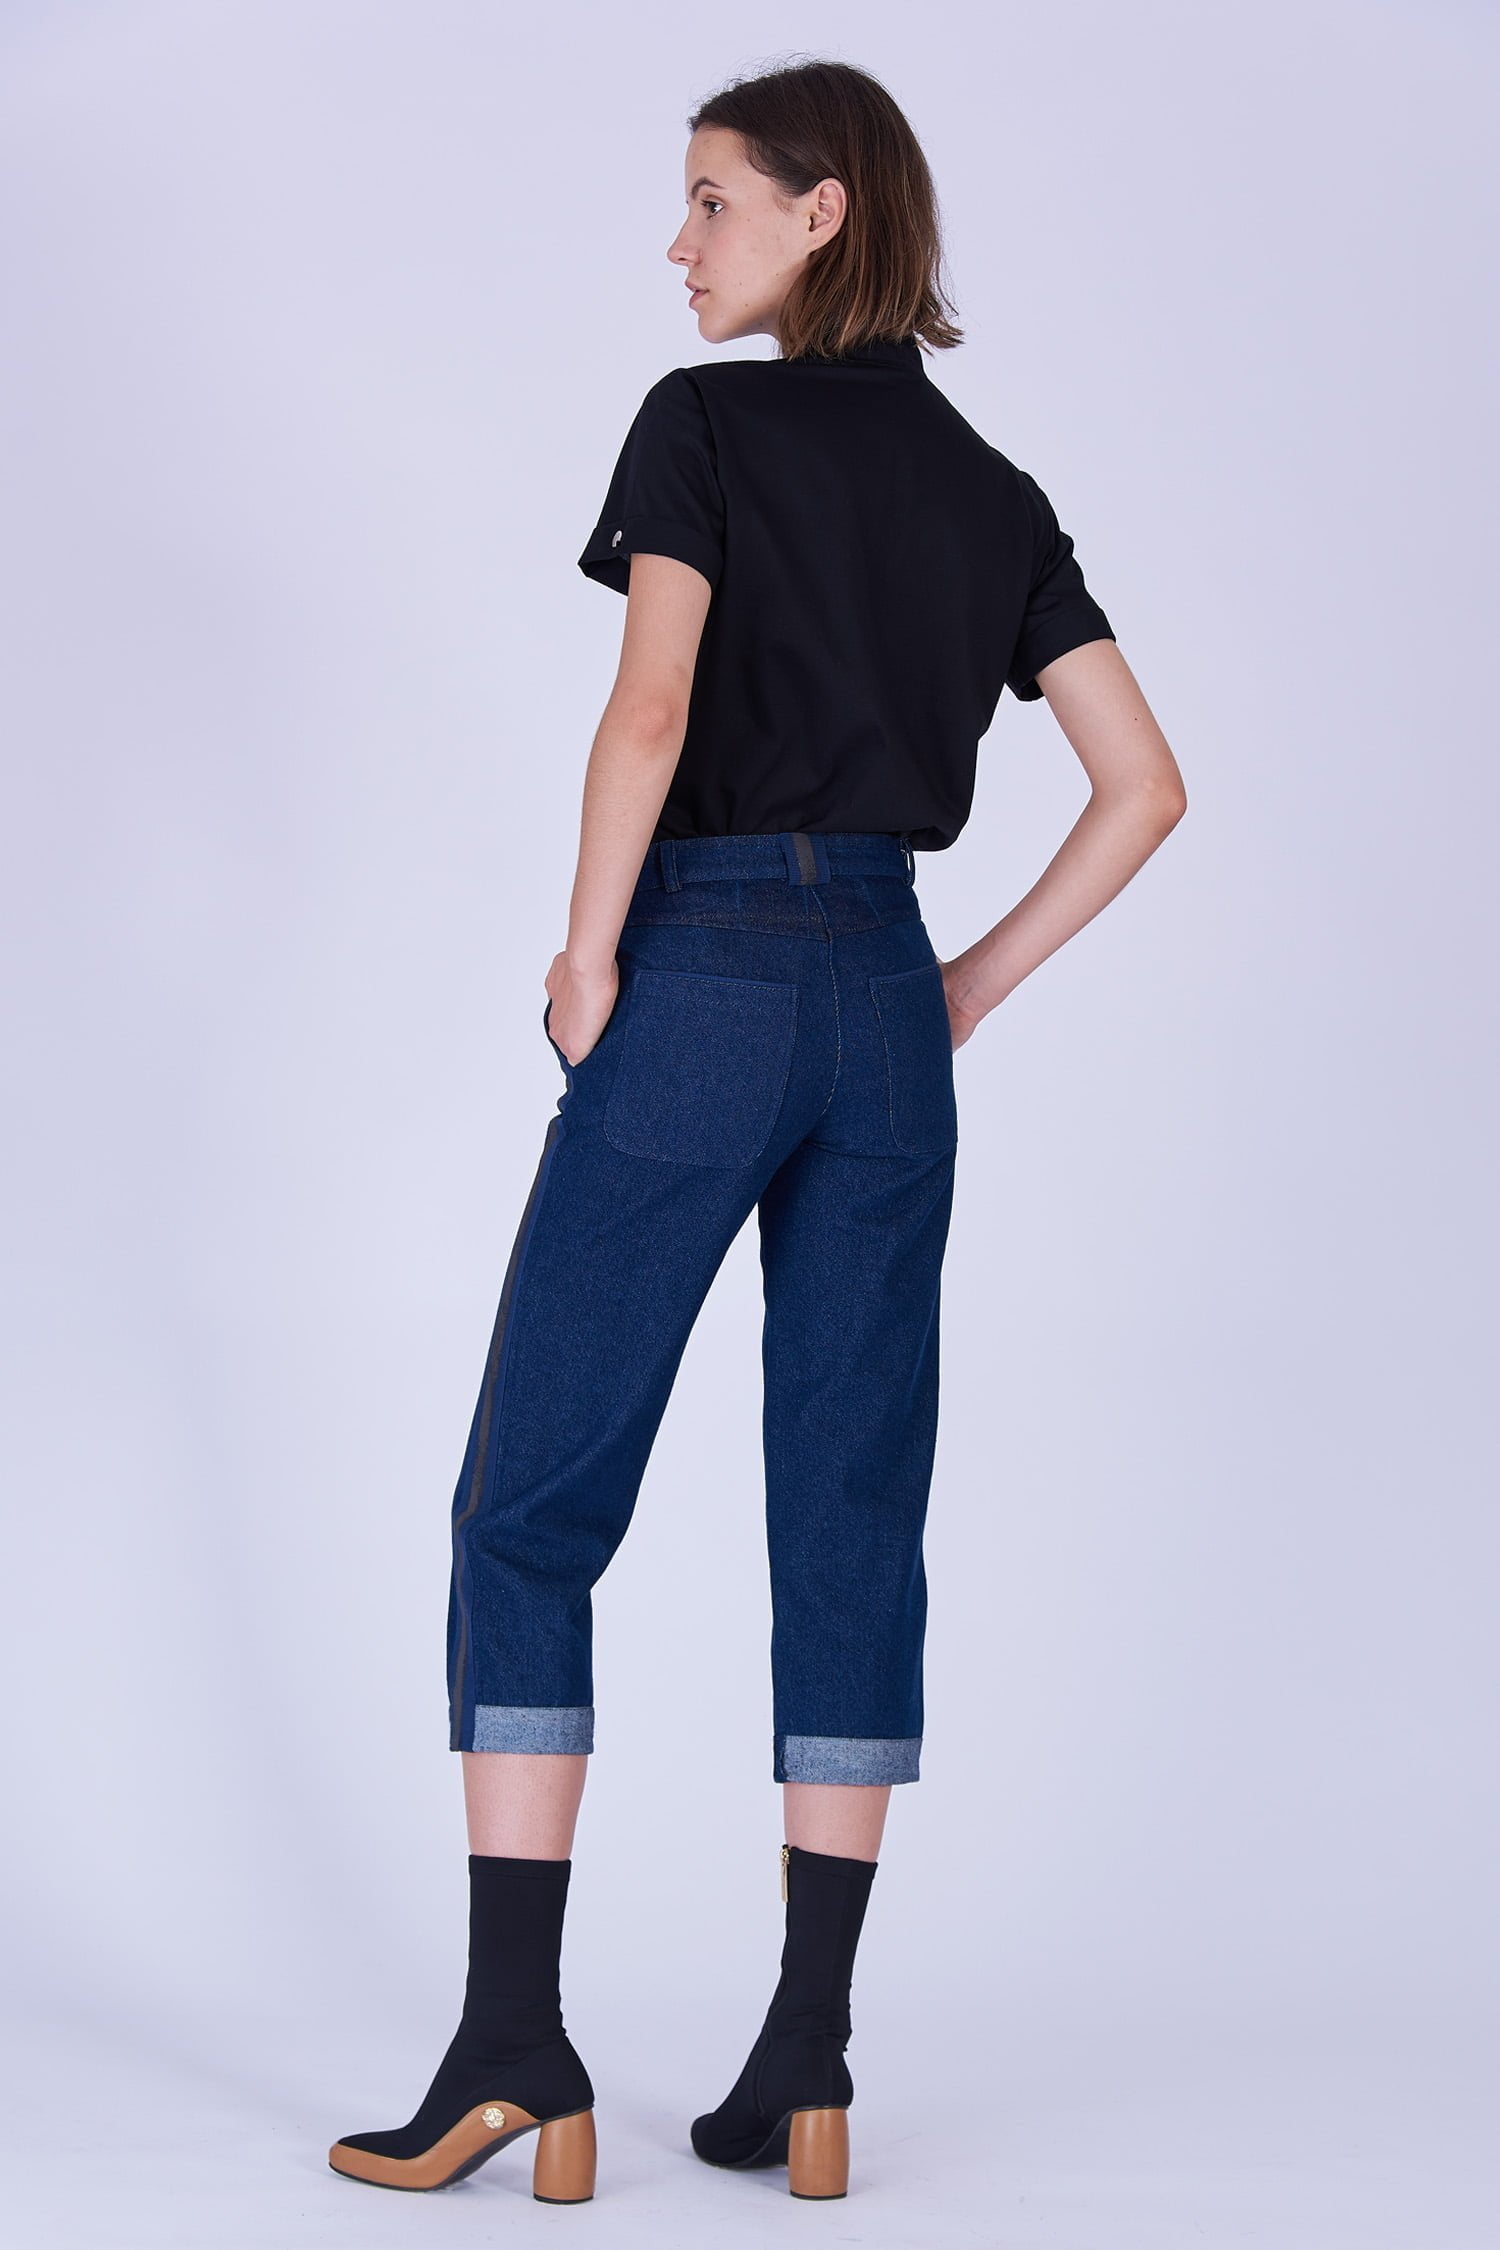 Acephala Fw19 20 Black T Shirt Bowtie Organic Czarny Kokarda Dark Blue Denim Trousers Stripe Niebieskie Jeansy Back 1